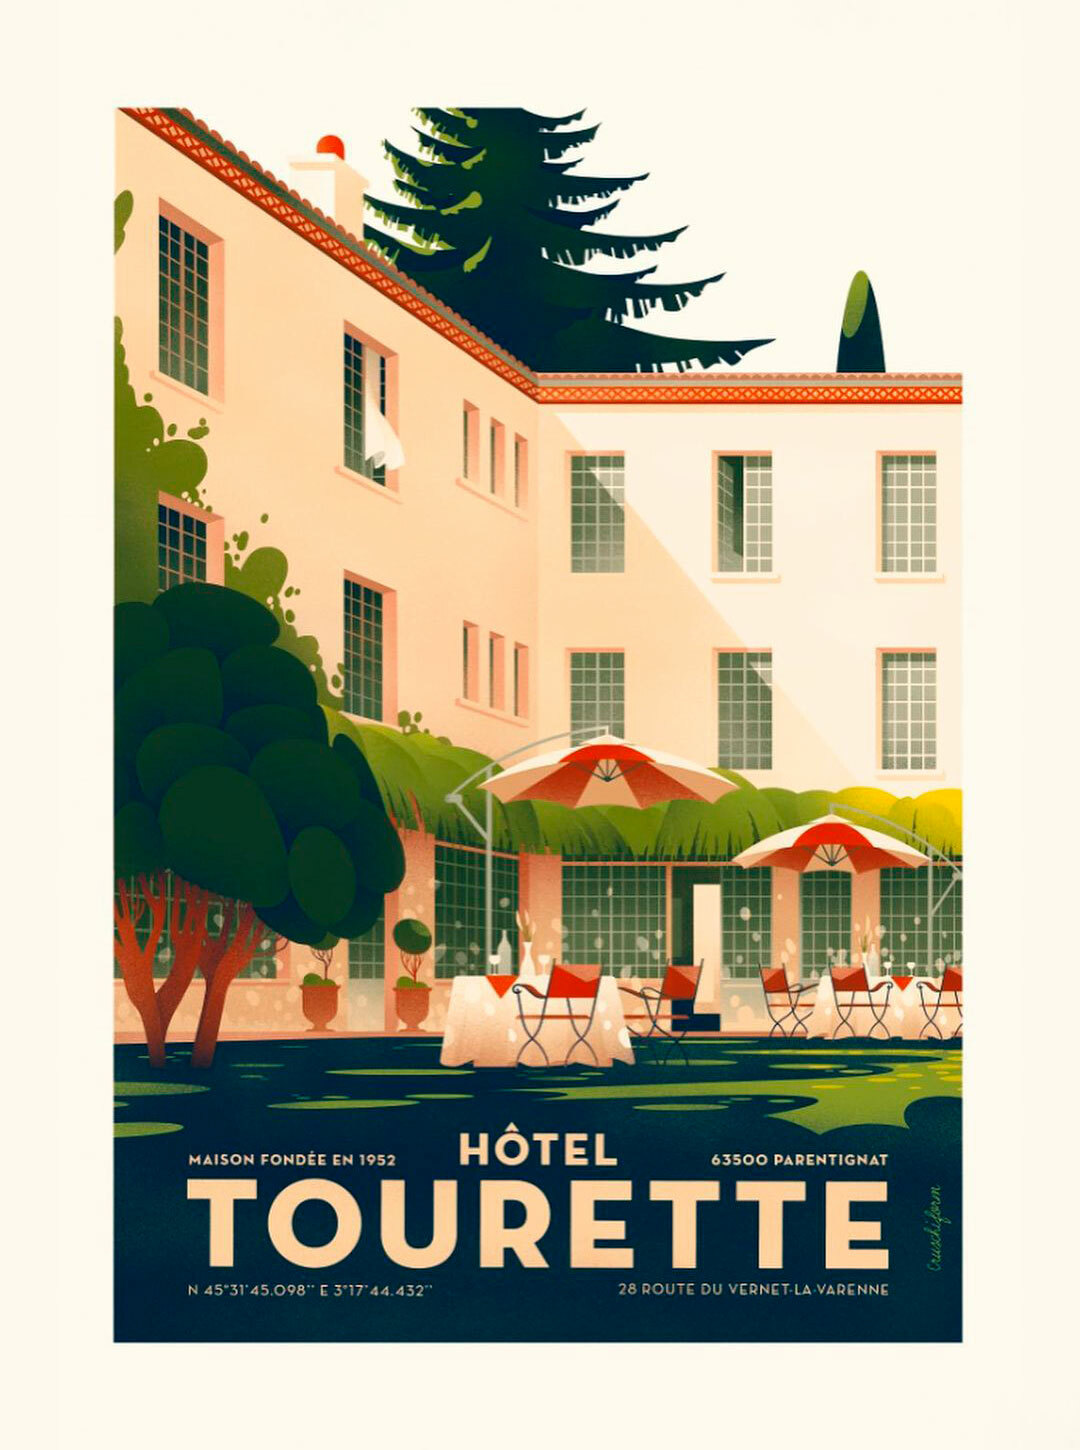 Hotel Tourette